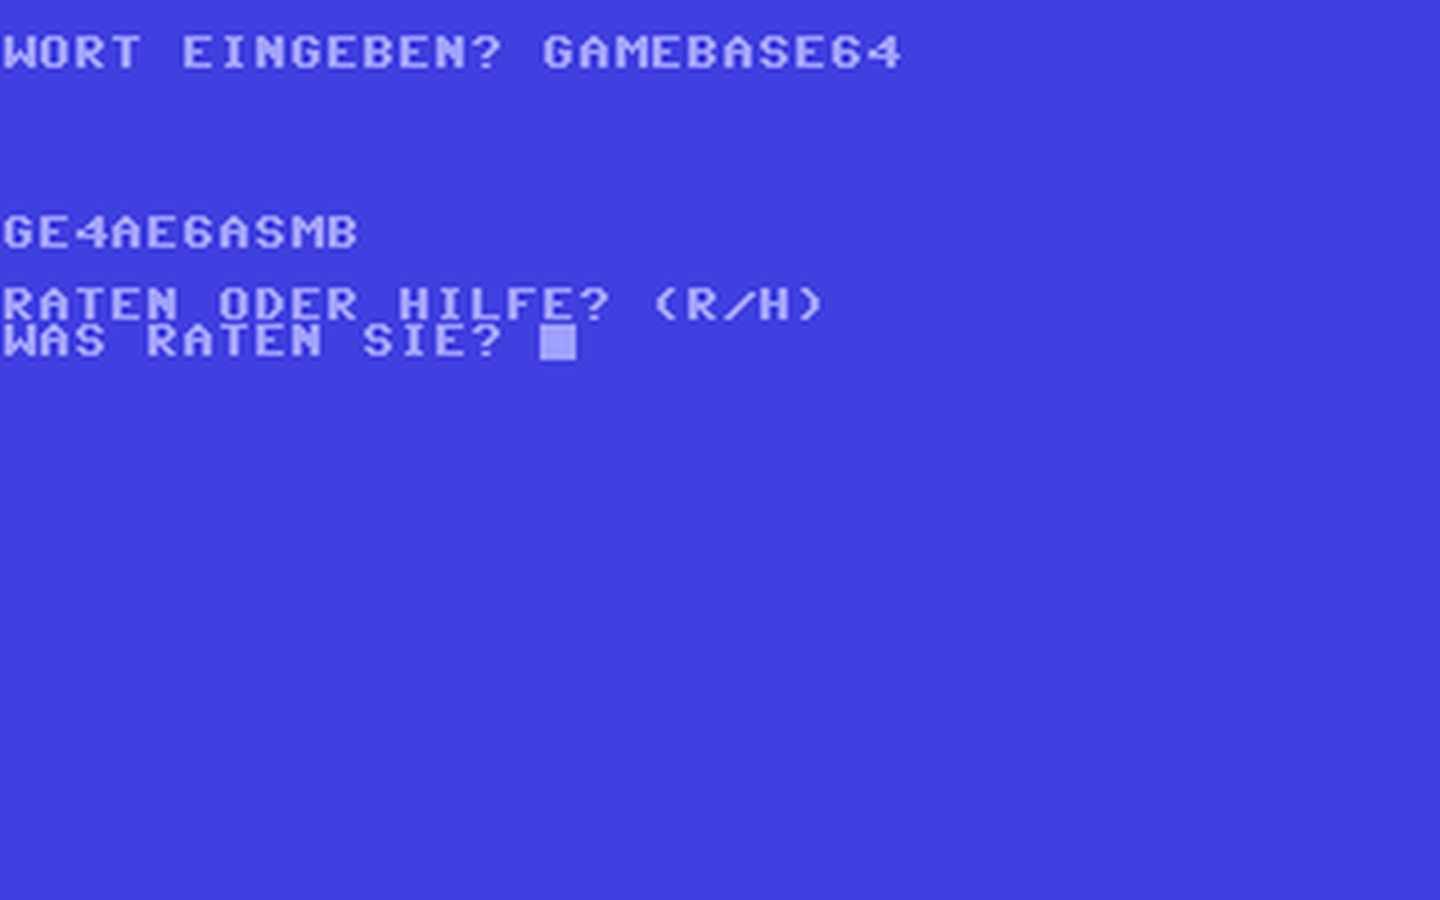 C64 GameBase Wortspiel